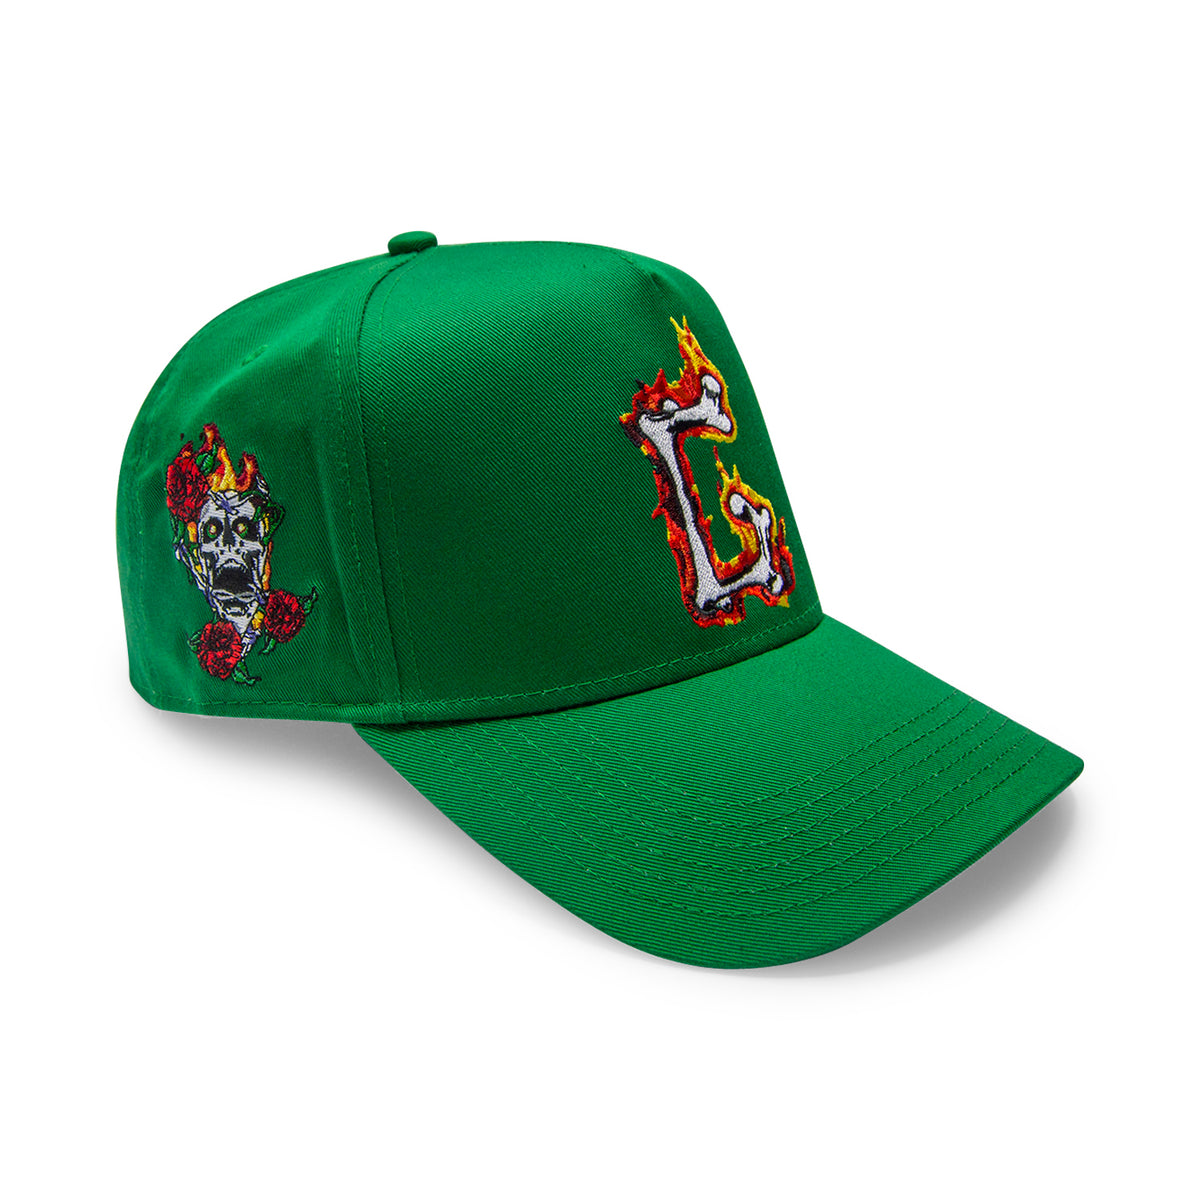 green G hat